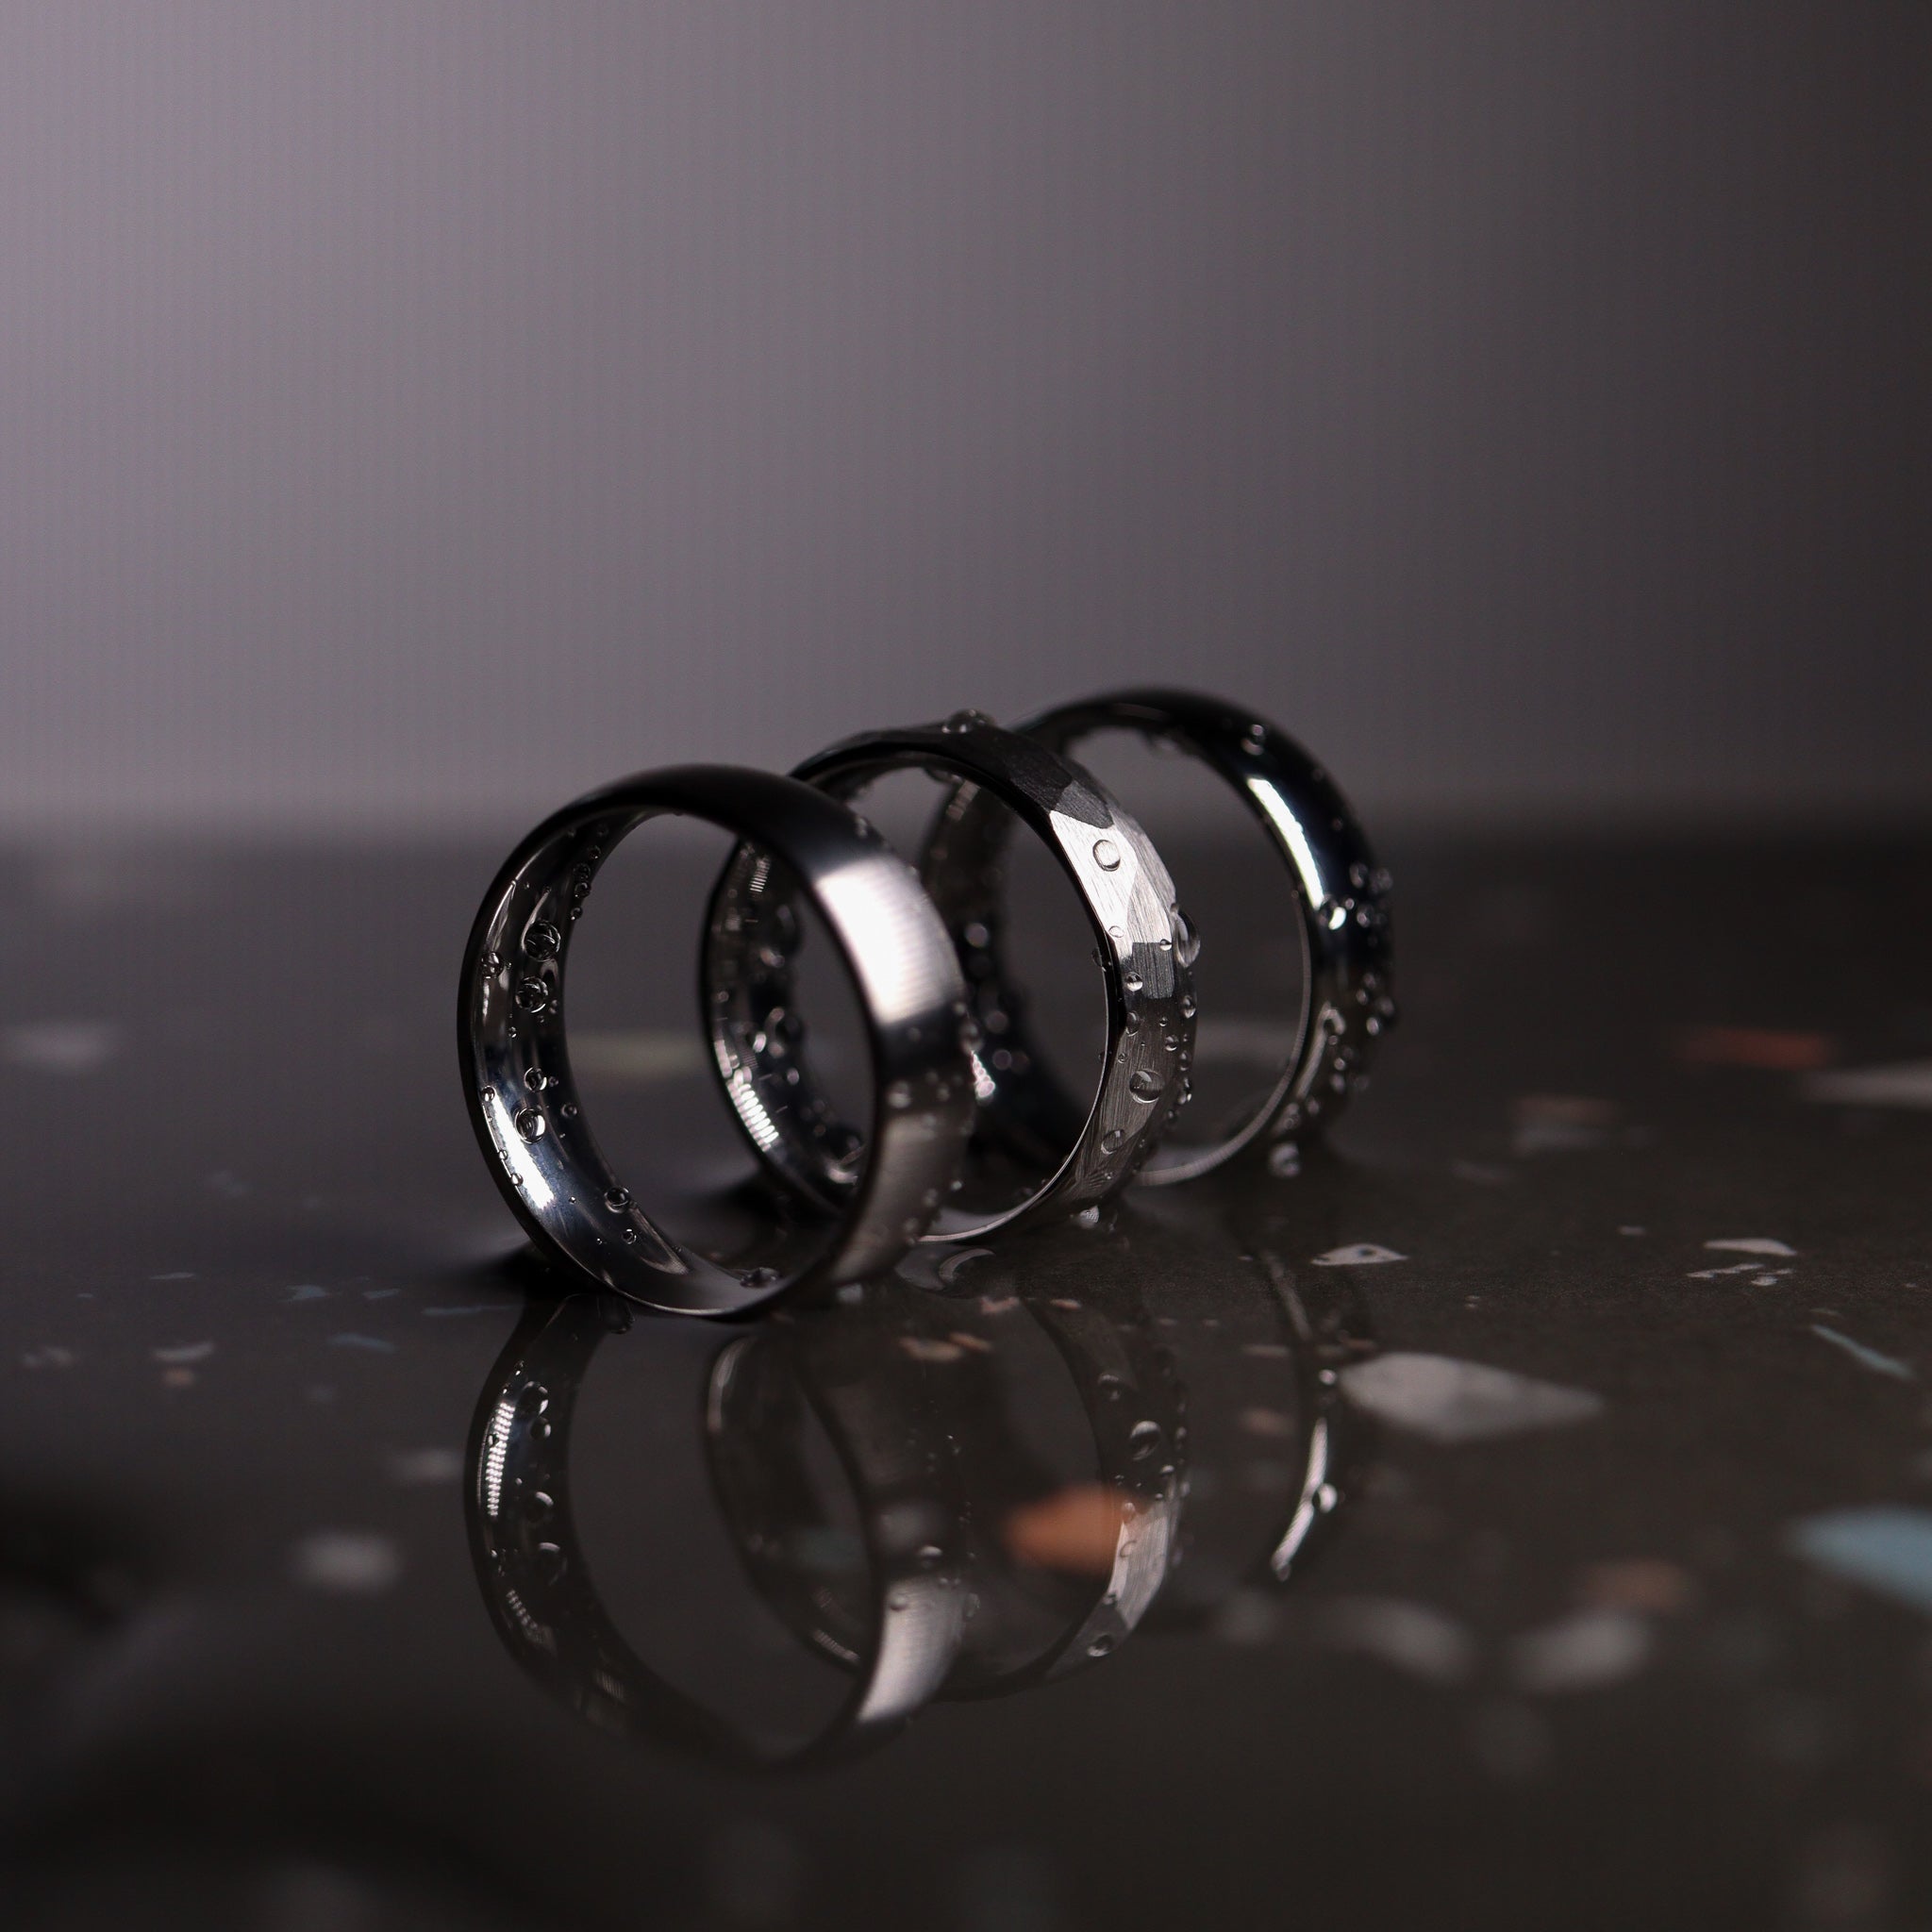 Buy Black Titanium Ring Online In India - Etsy India